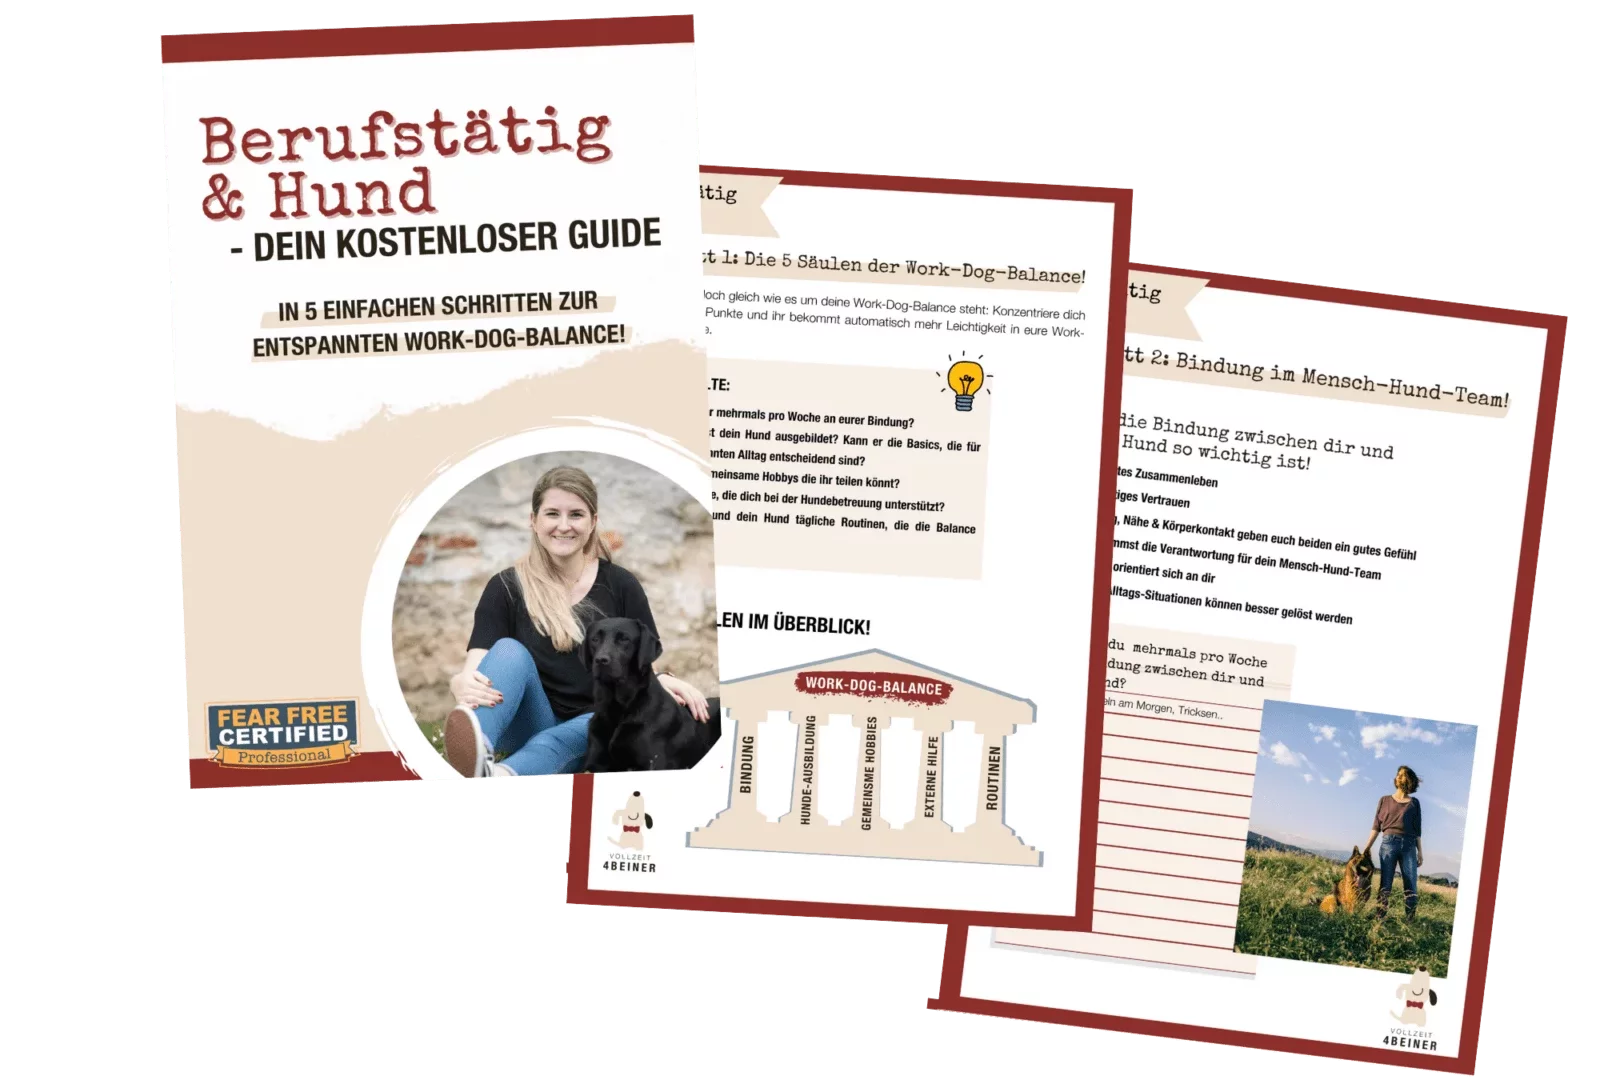 berufstätig-und-hund-kostenloser-guide-gratis-hundetrainer-hundeschule-vollzeit4beiner